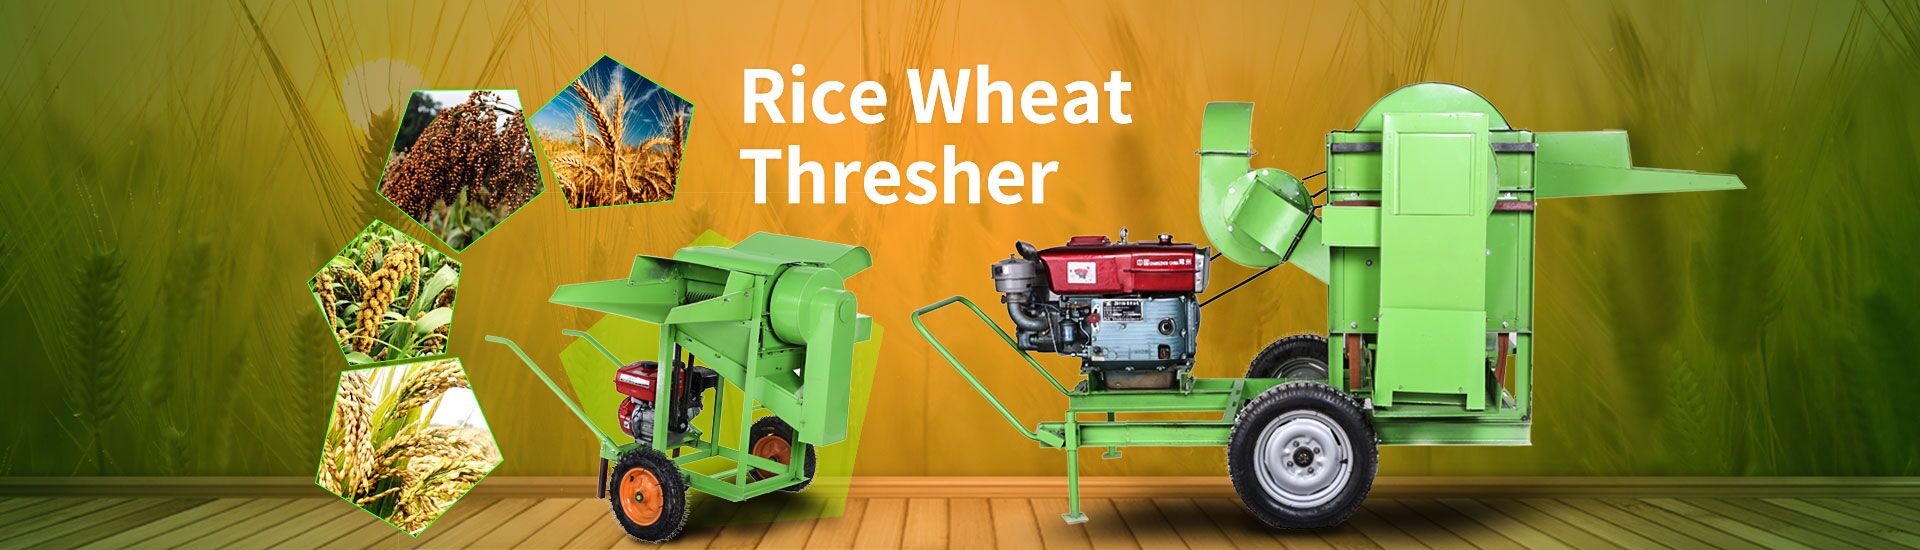 rice-wheat-thresher